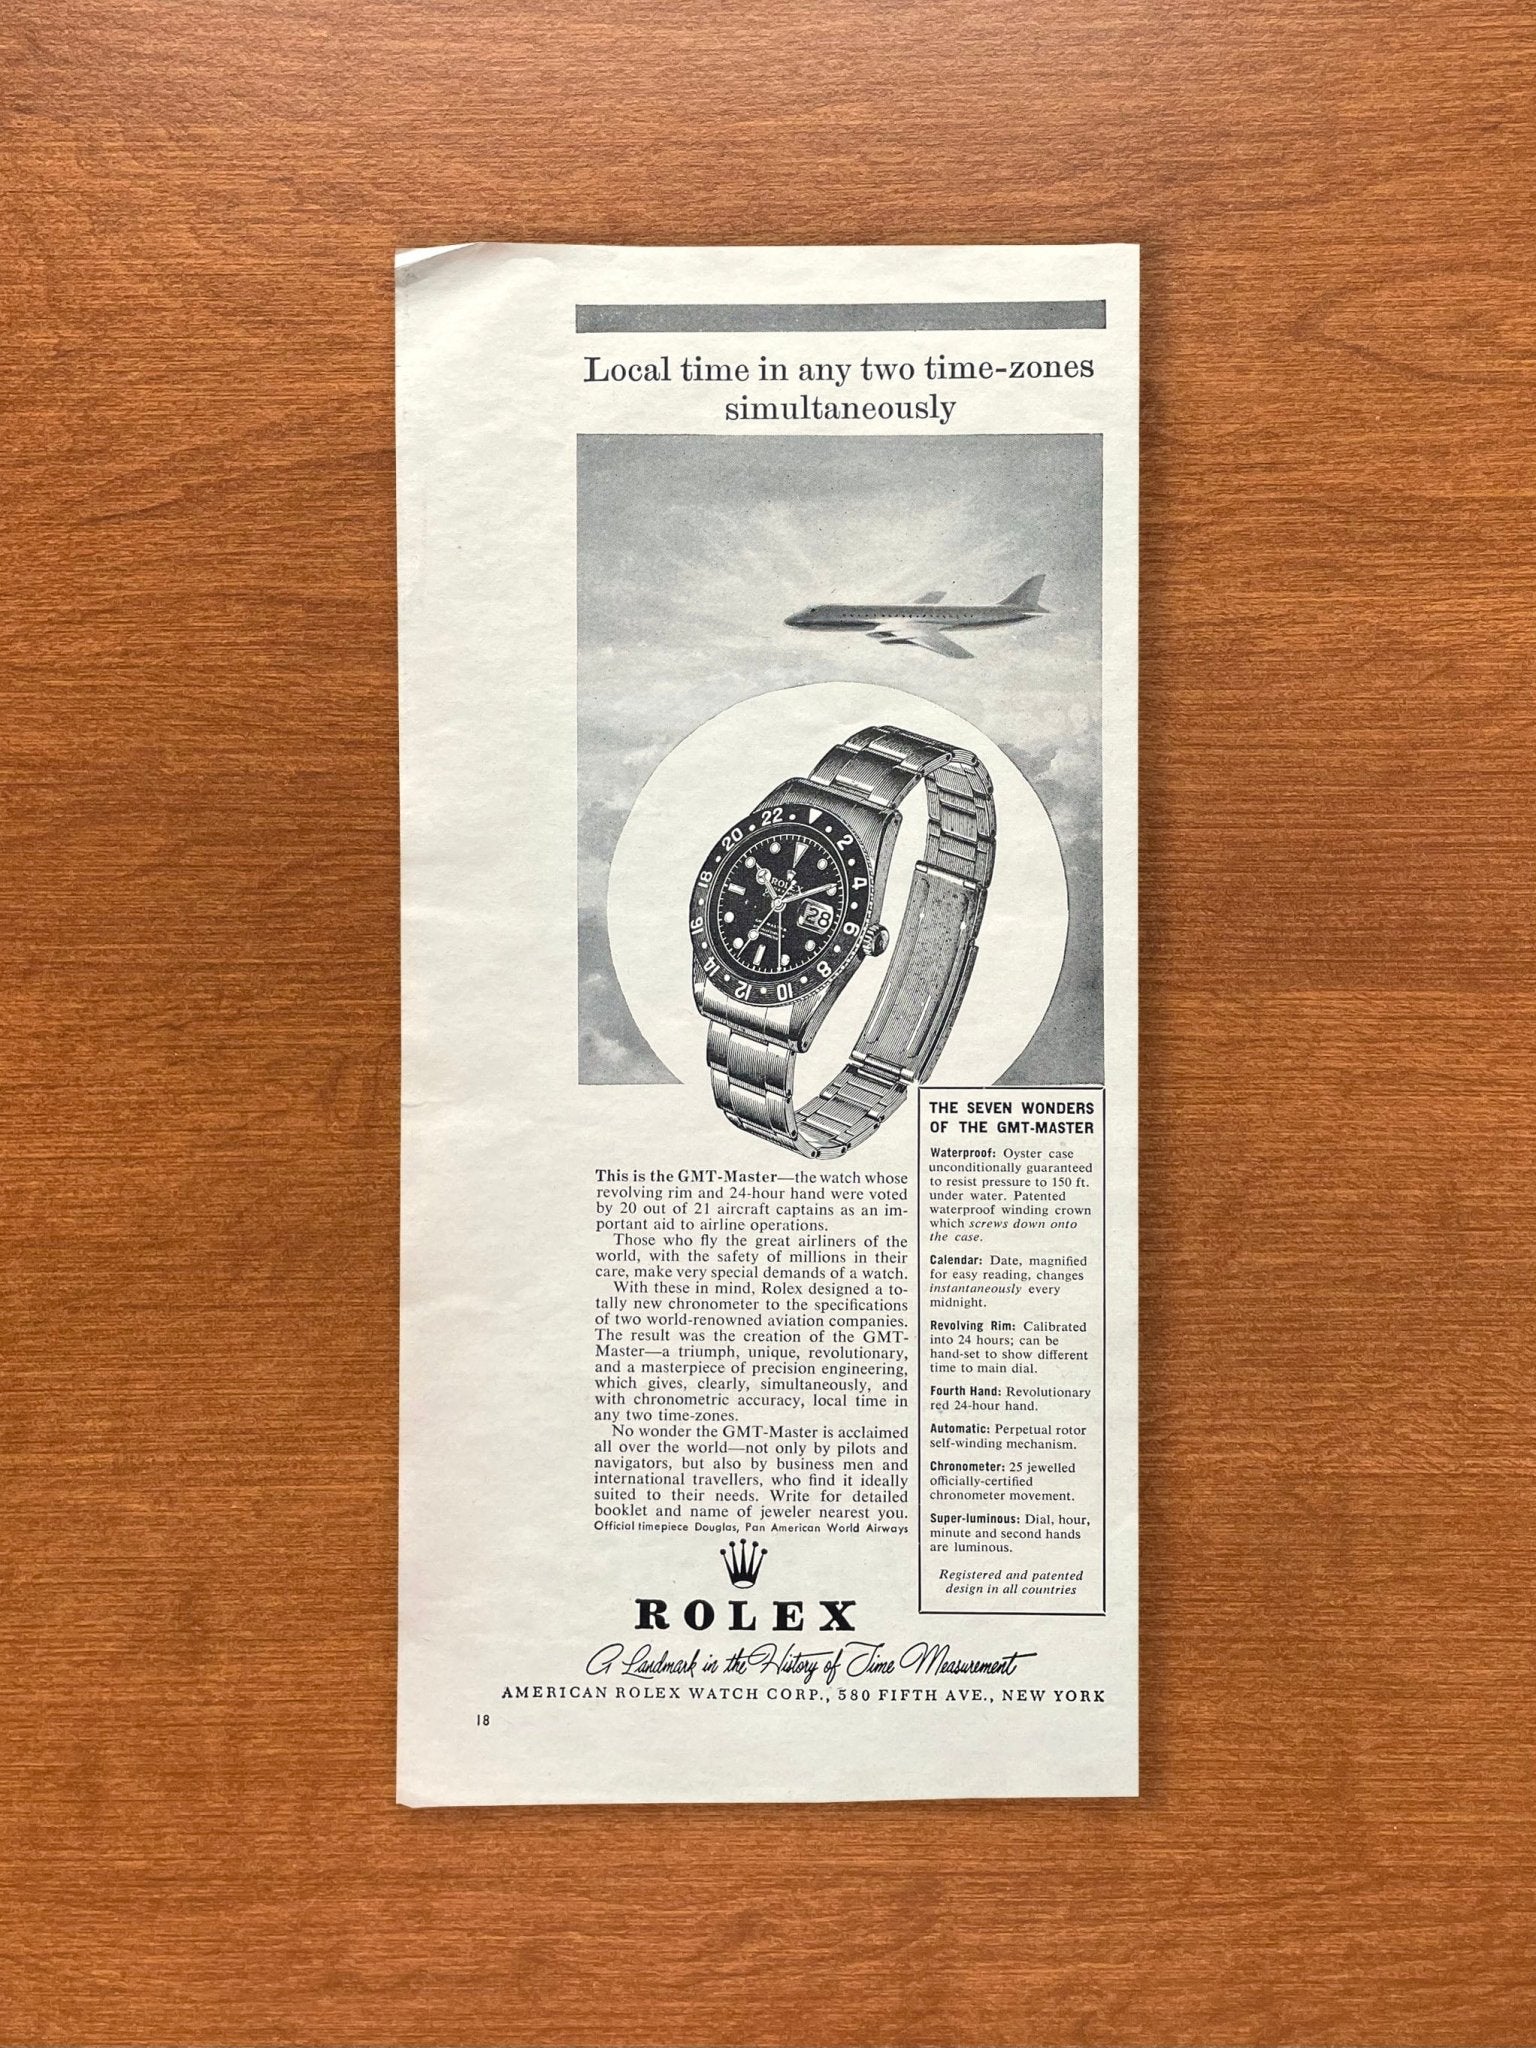 1959 Rolex GMT Master Ref. 6542 "The Seven Wonders" Advertisement